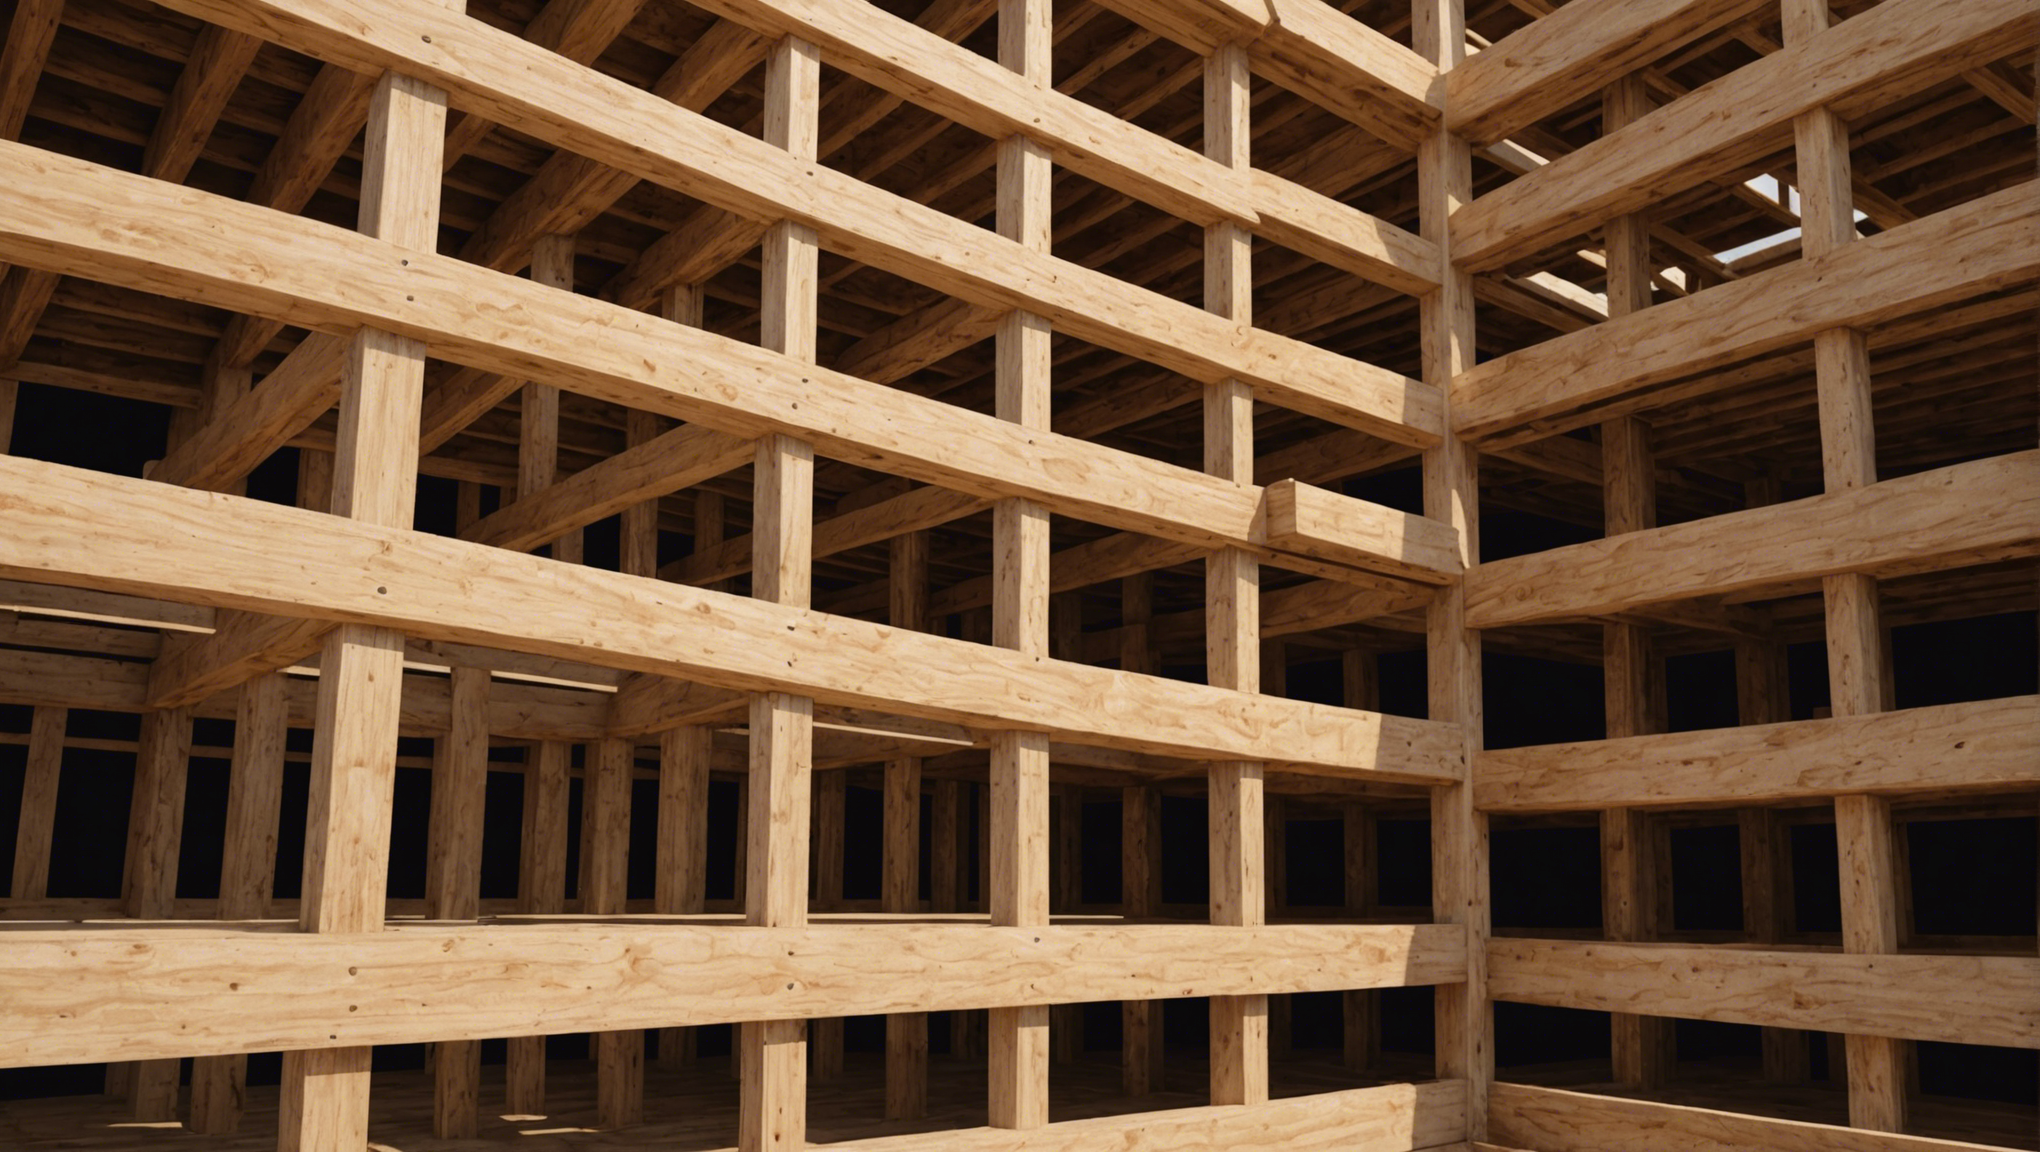 découvrez les avantages de choisir la construction en bois pour votre projet. résistance, durabilité et respect de l'environnement : les raisons pour lesquelles le bois est une option de construction à privilégier.